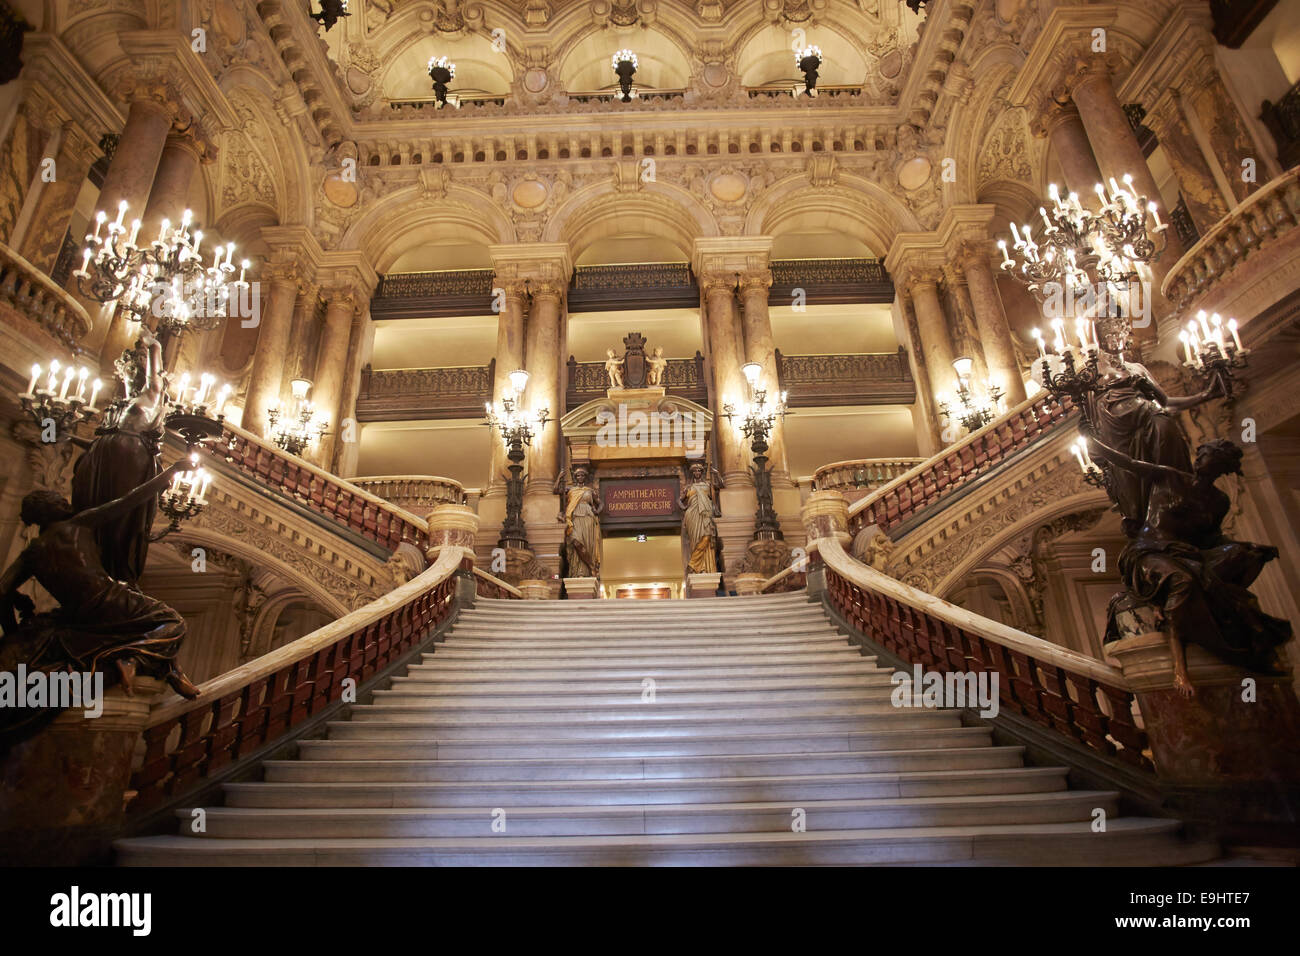 Opera Garnier stairway, luxury interior in Paris Stock Photo